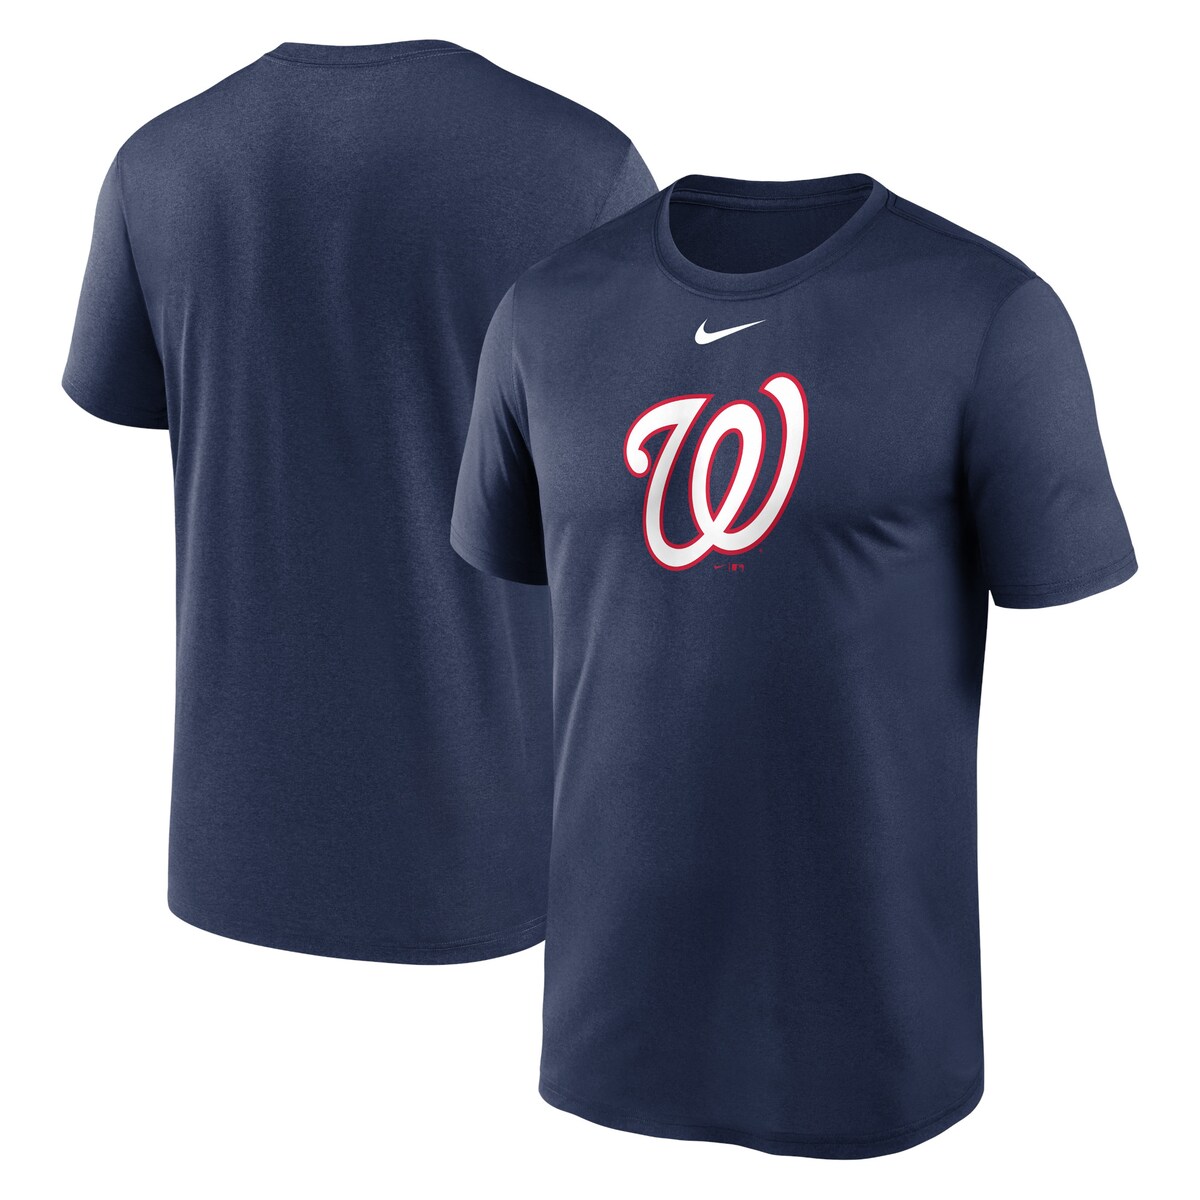 MLB ナショナルズ Tシャツ Nike ナイキ メンズ ネイビ